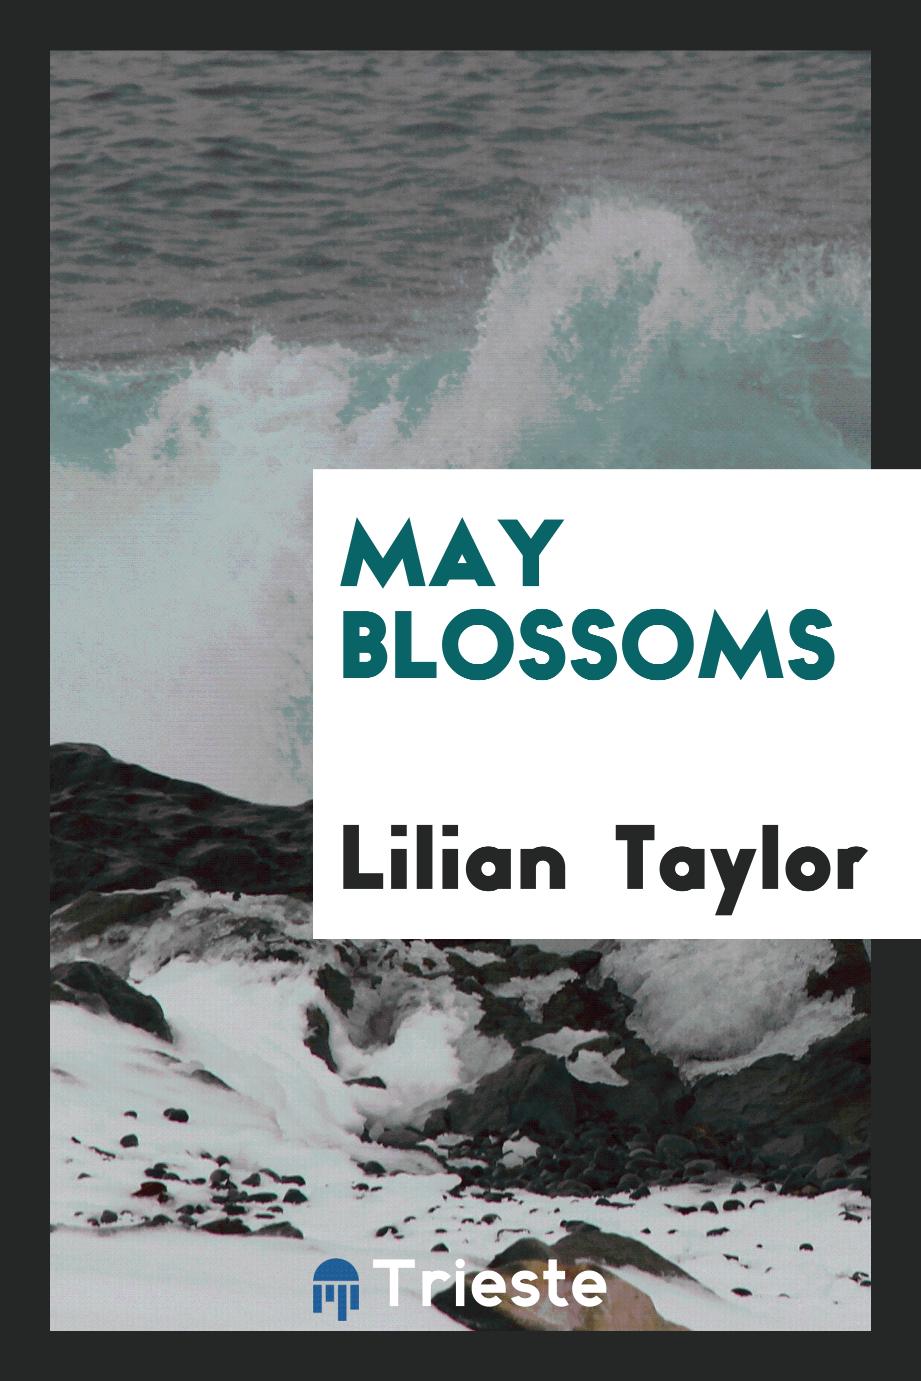 May Blossoms